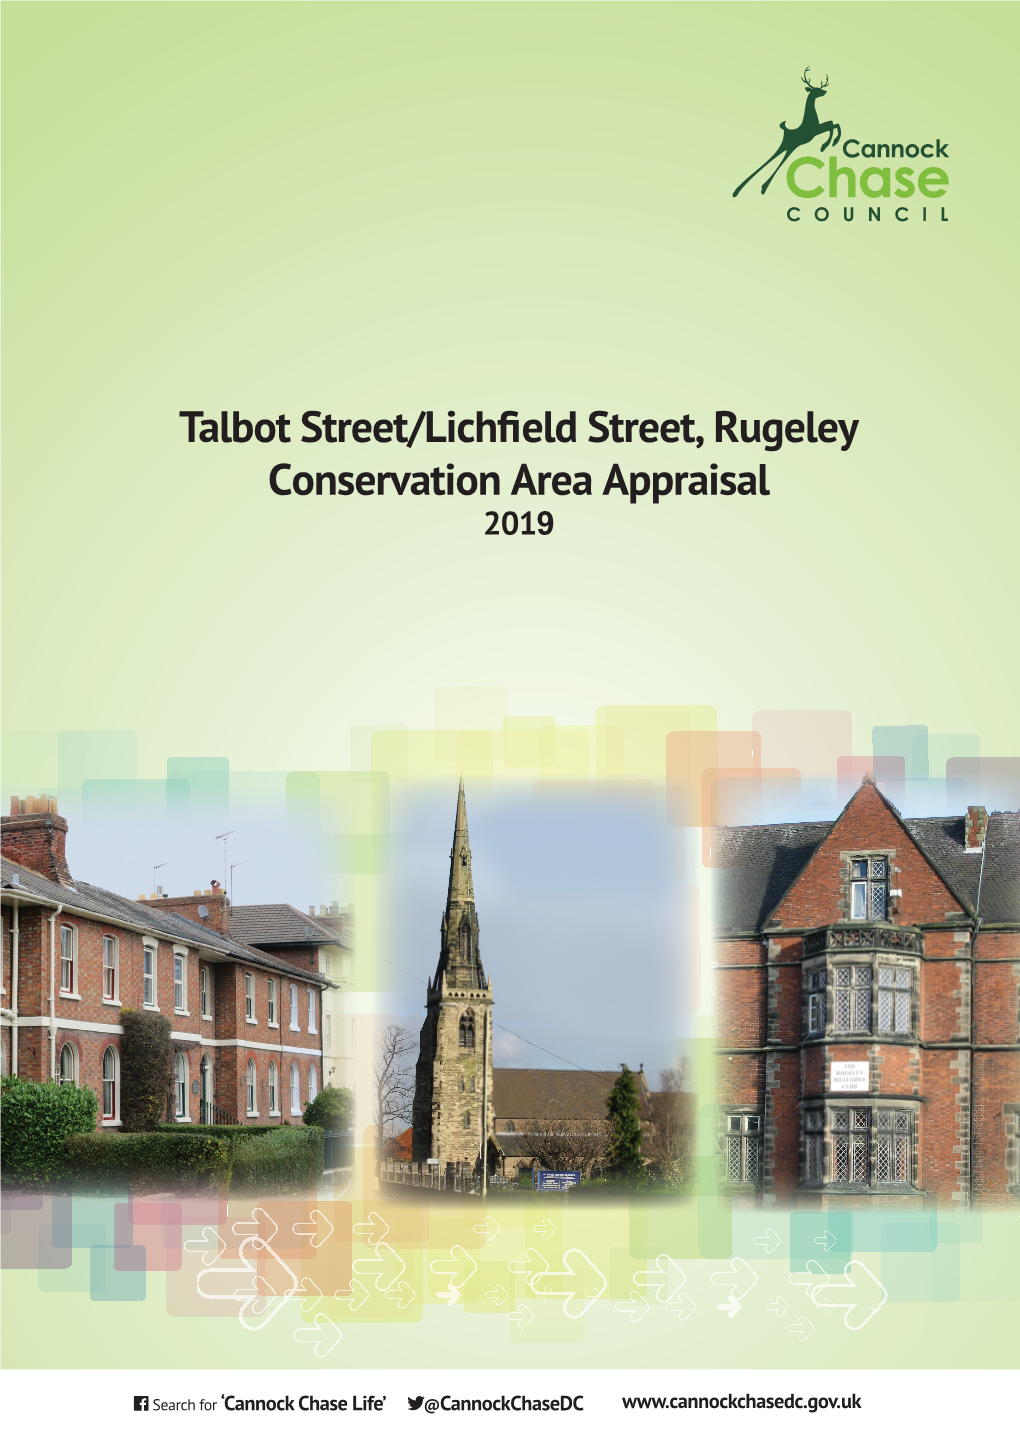 Talbot Street/Lichfield Street, Rugeley CA Appraisal 2019